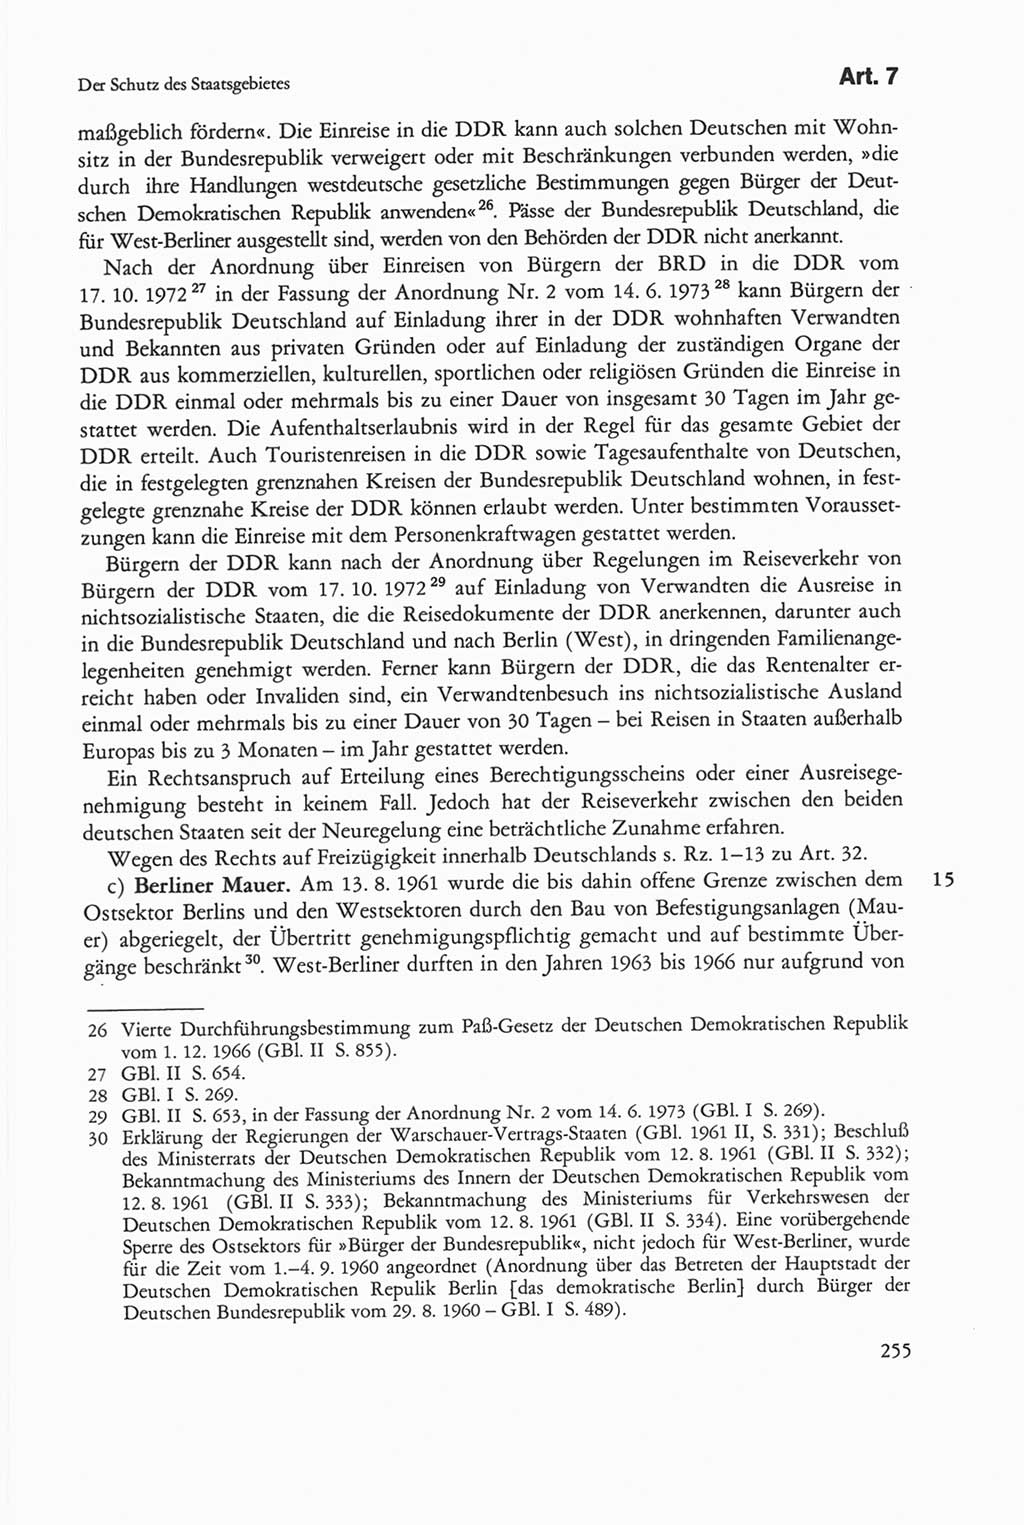 Die sozialistische Verfassung der Deutschen Demokratischen Republik (DDR), Kommentar 1982, Seite 255 (Soz. Verf. DDR Komm. 1982, S. 255)